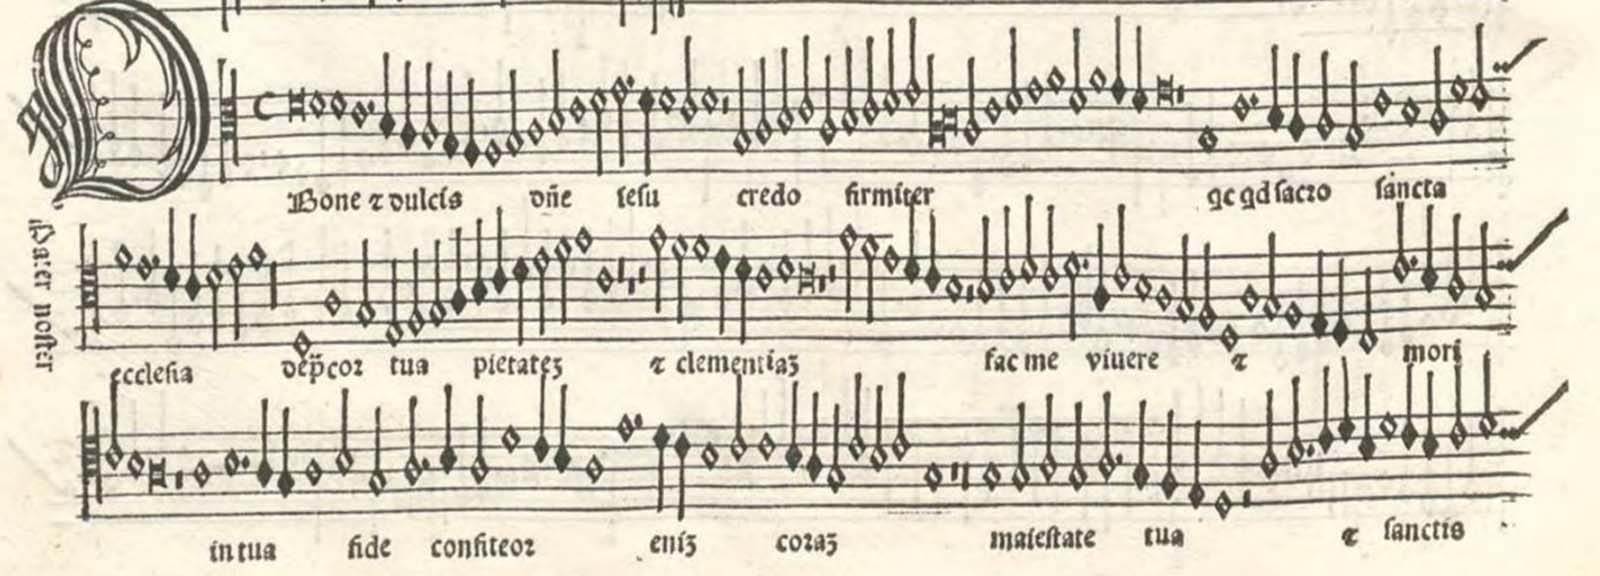 Josquin Desprez: analisi del mottetto O bone et dulcis Domine Jesu